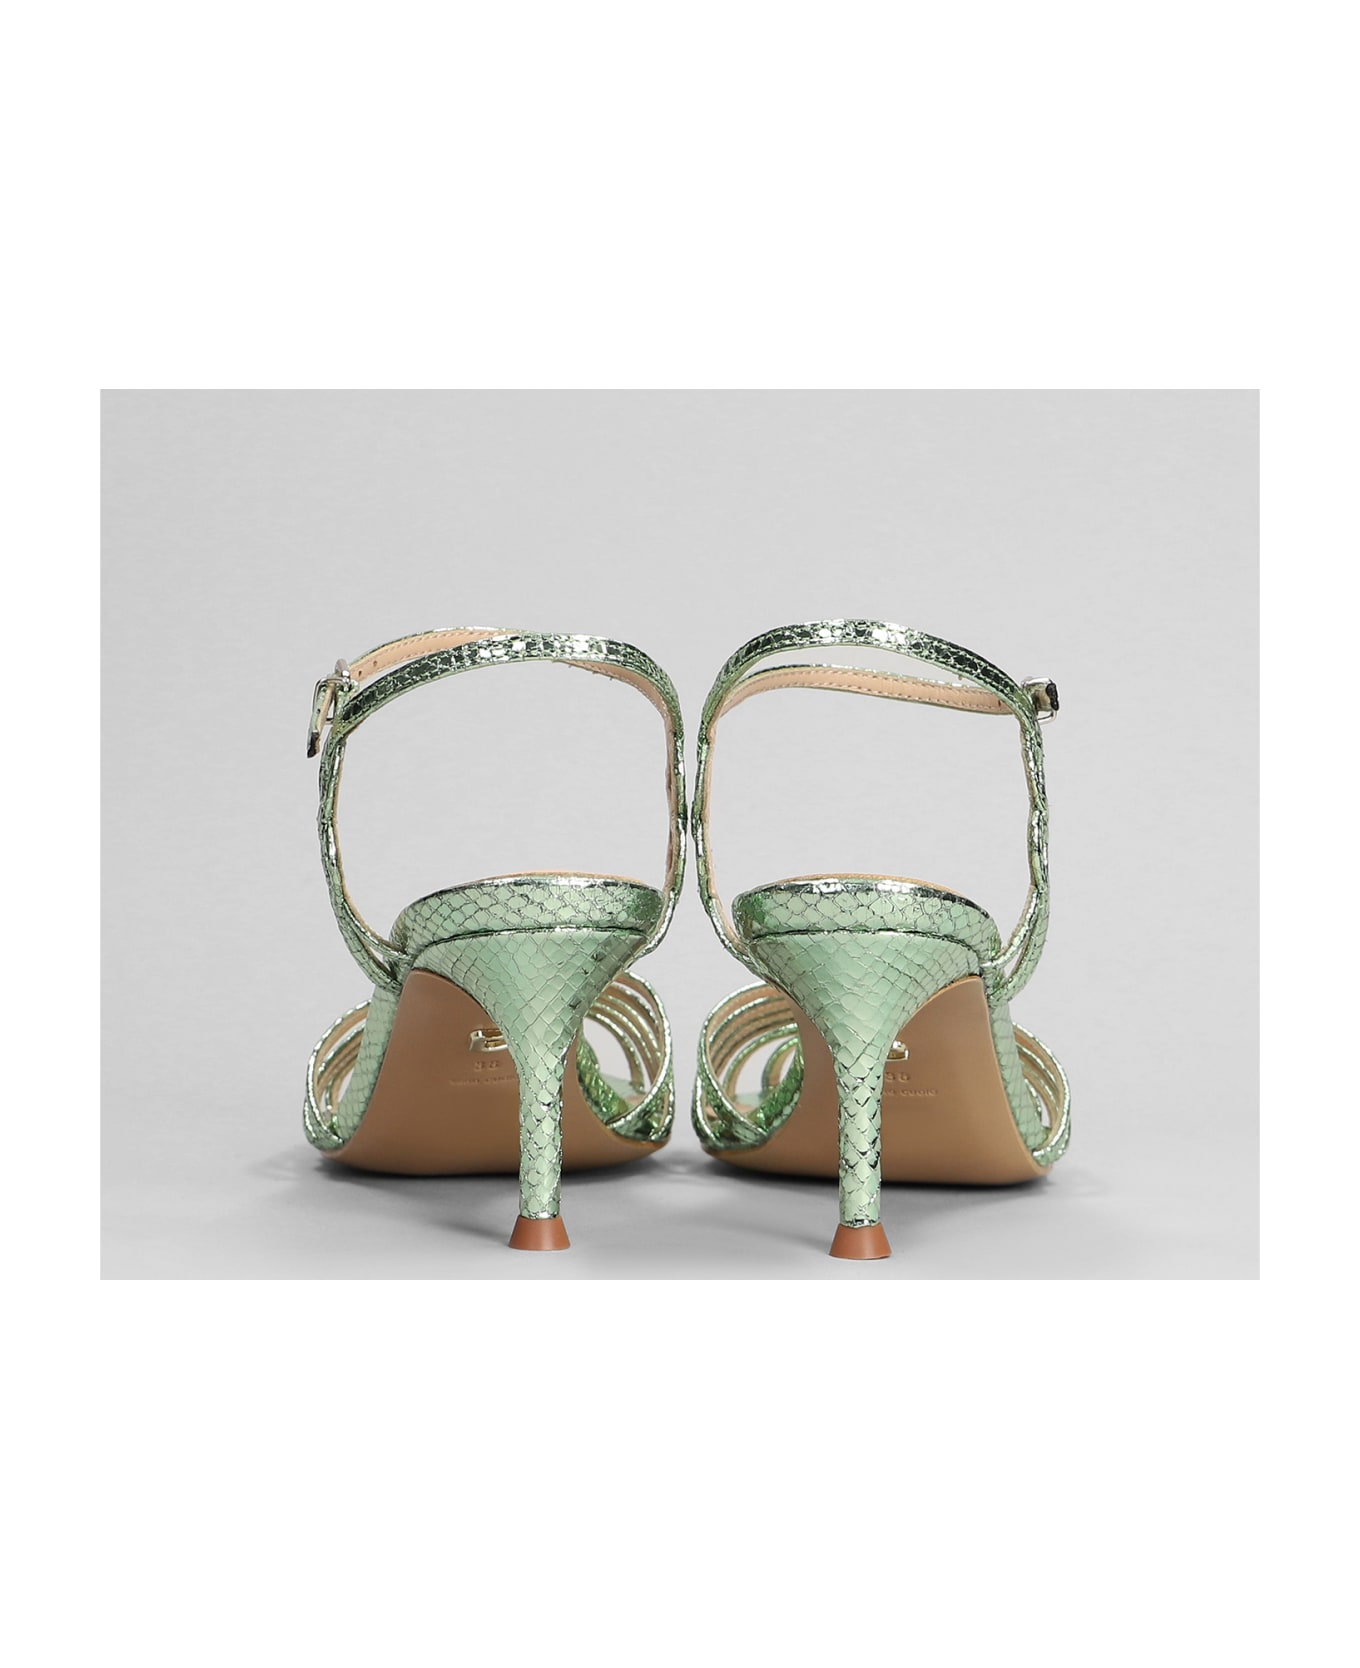 Lola Cruz Tango 65 Sandals In Green Leather - green